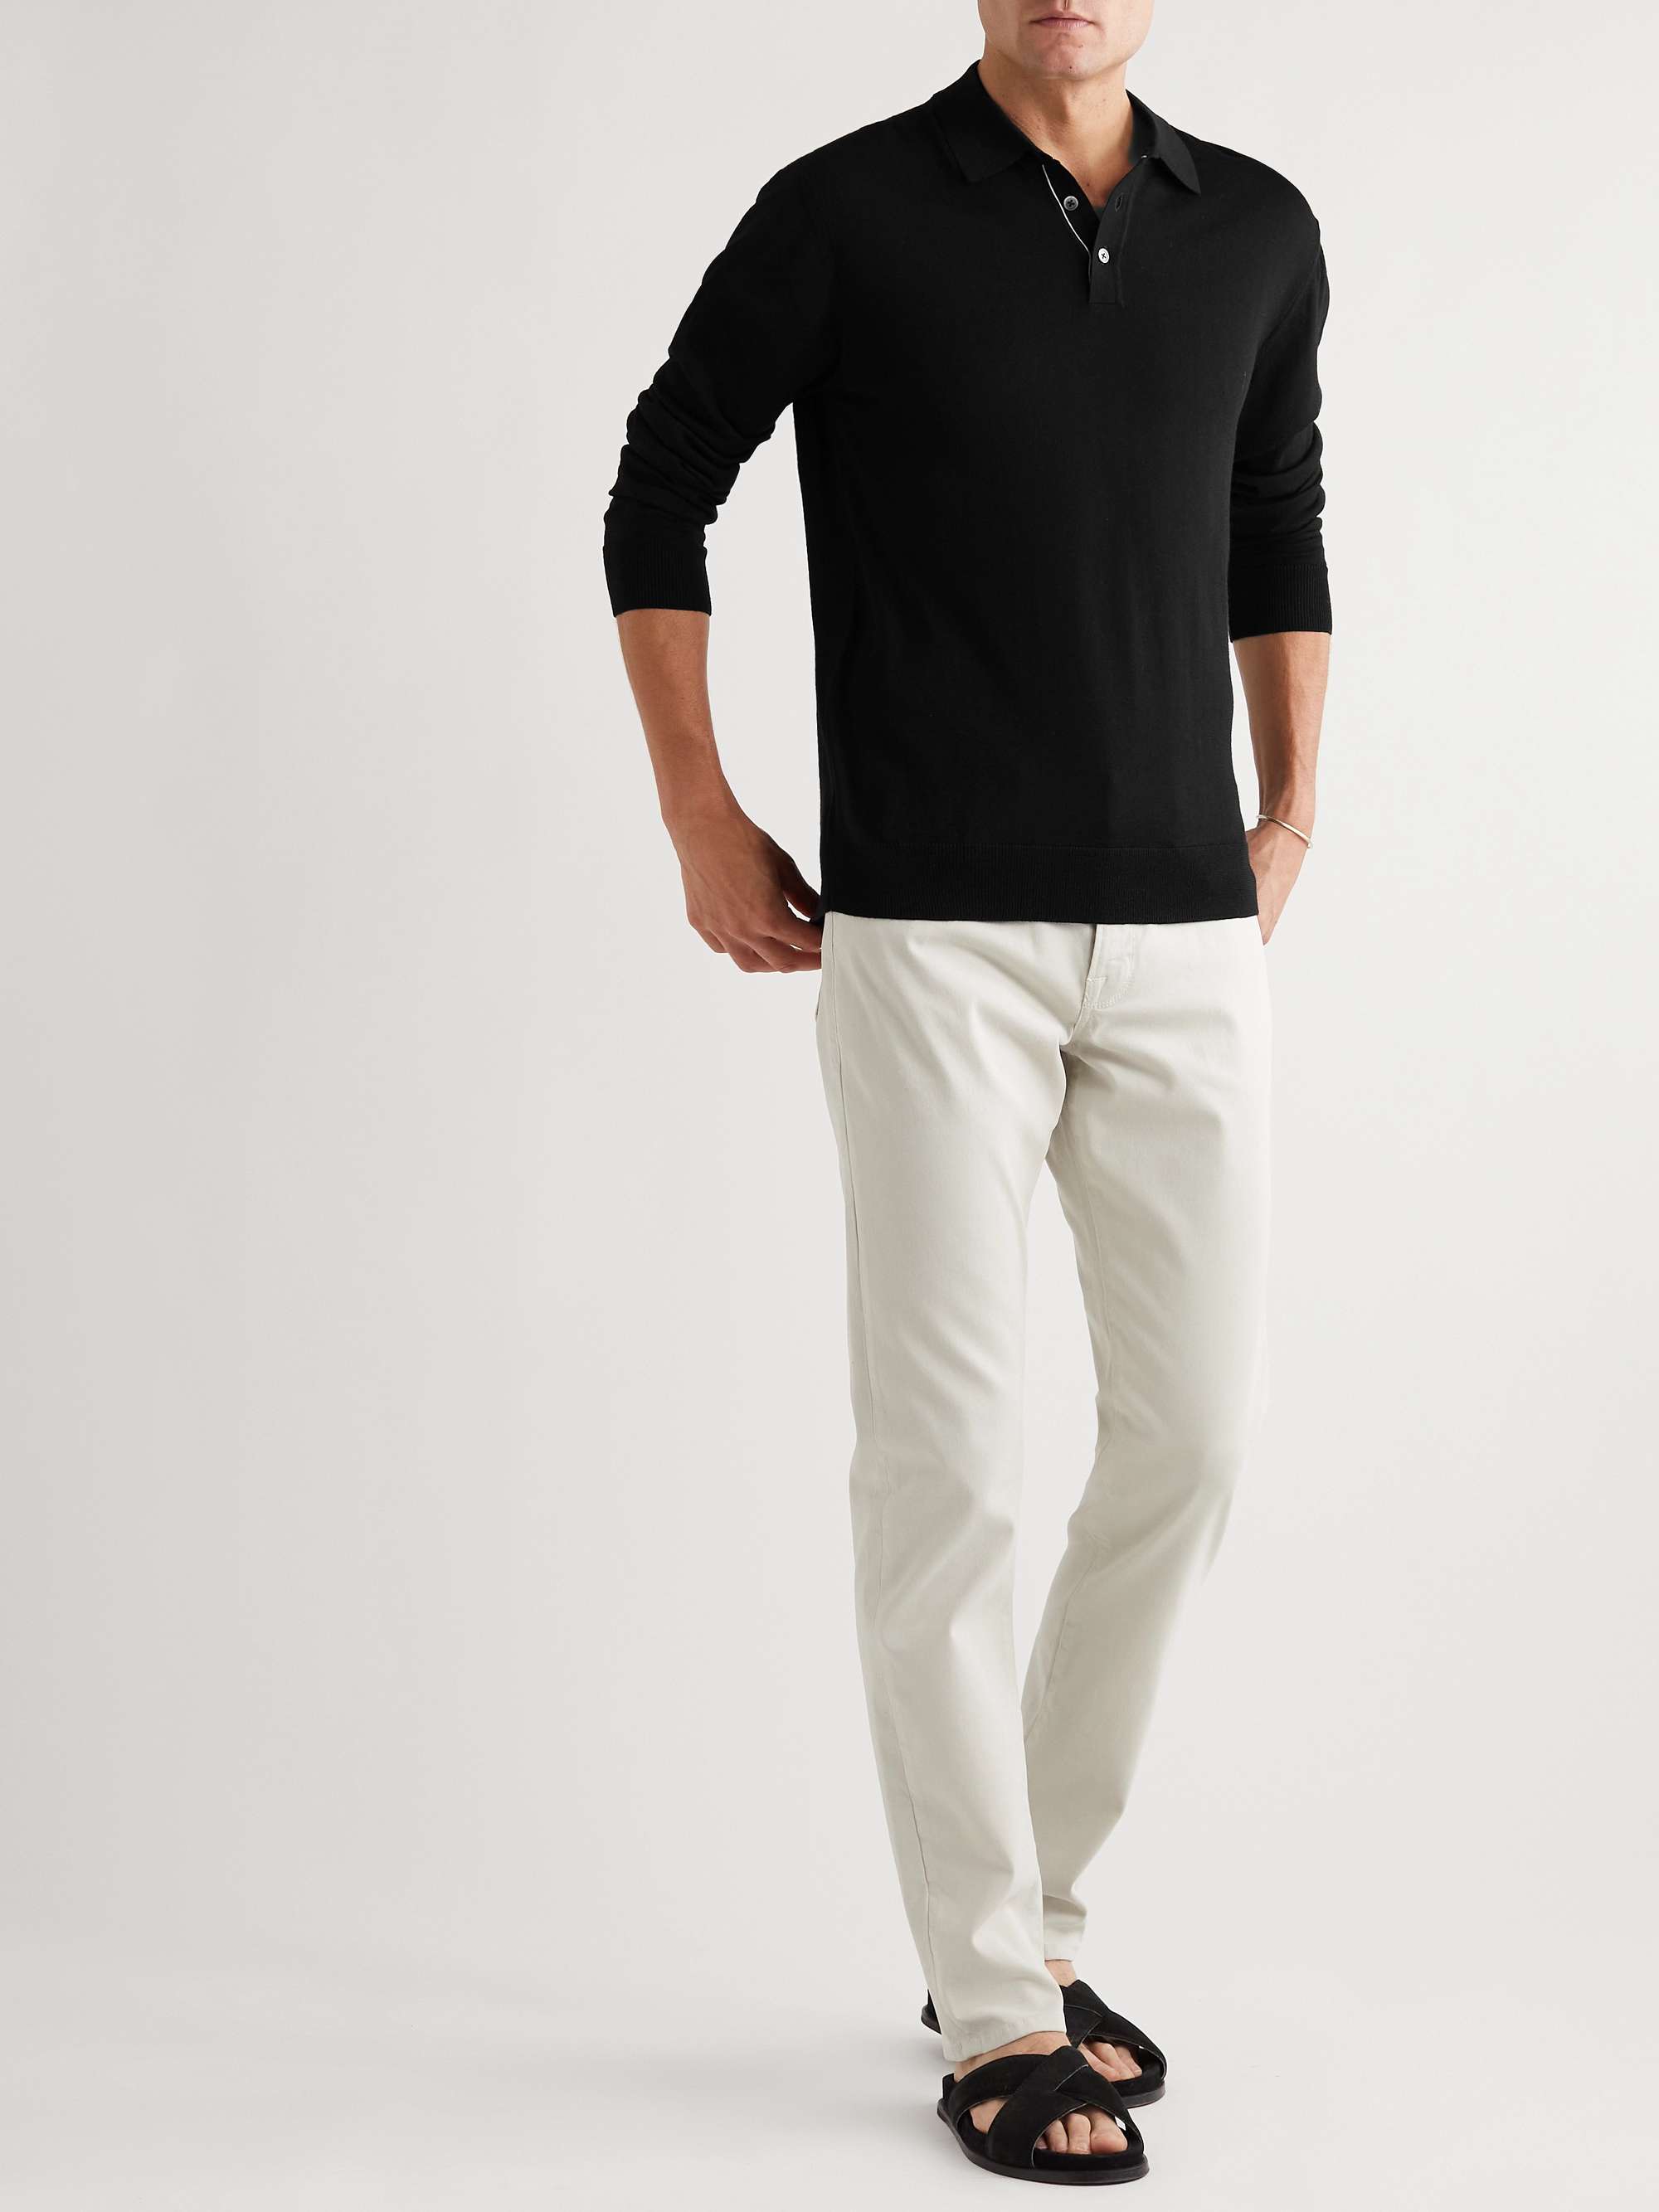 MR P. Slim-Fit Merino Wool Polo Shirt for Men | MR PORTER